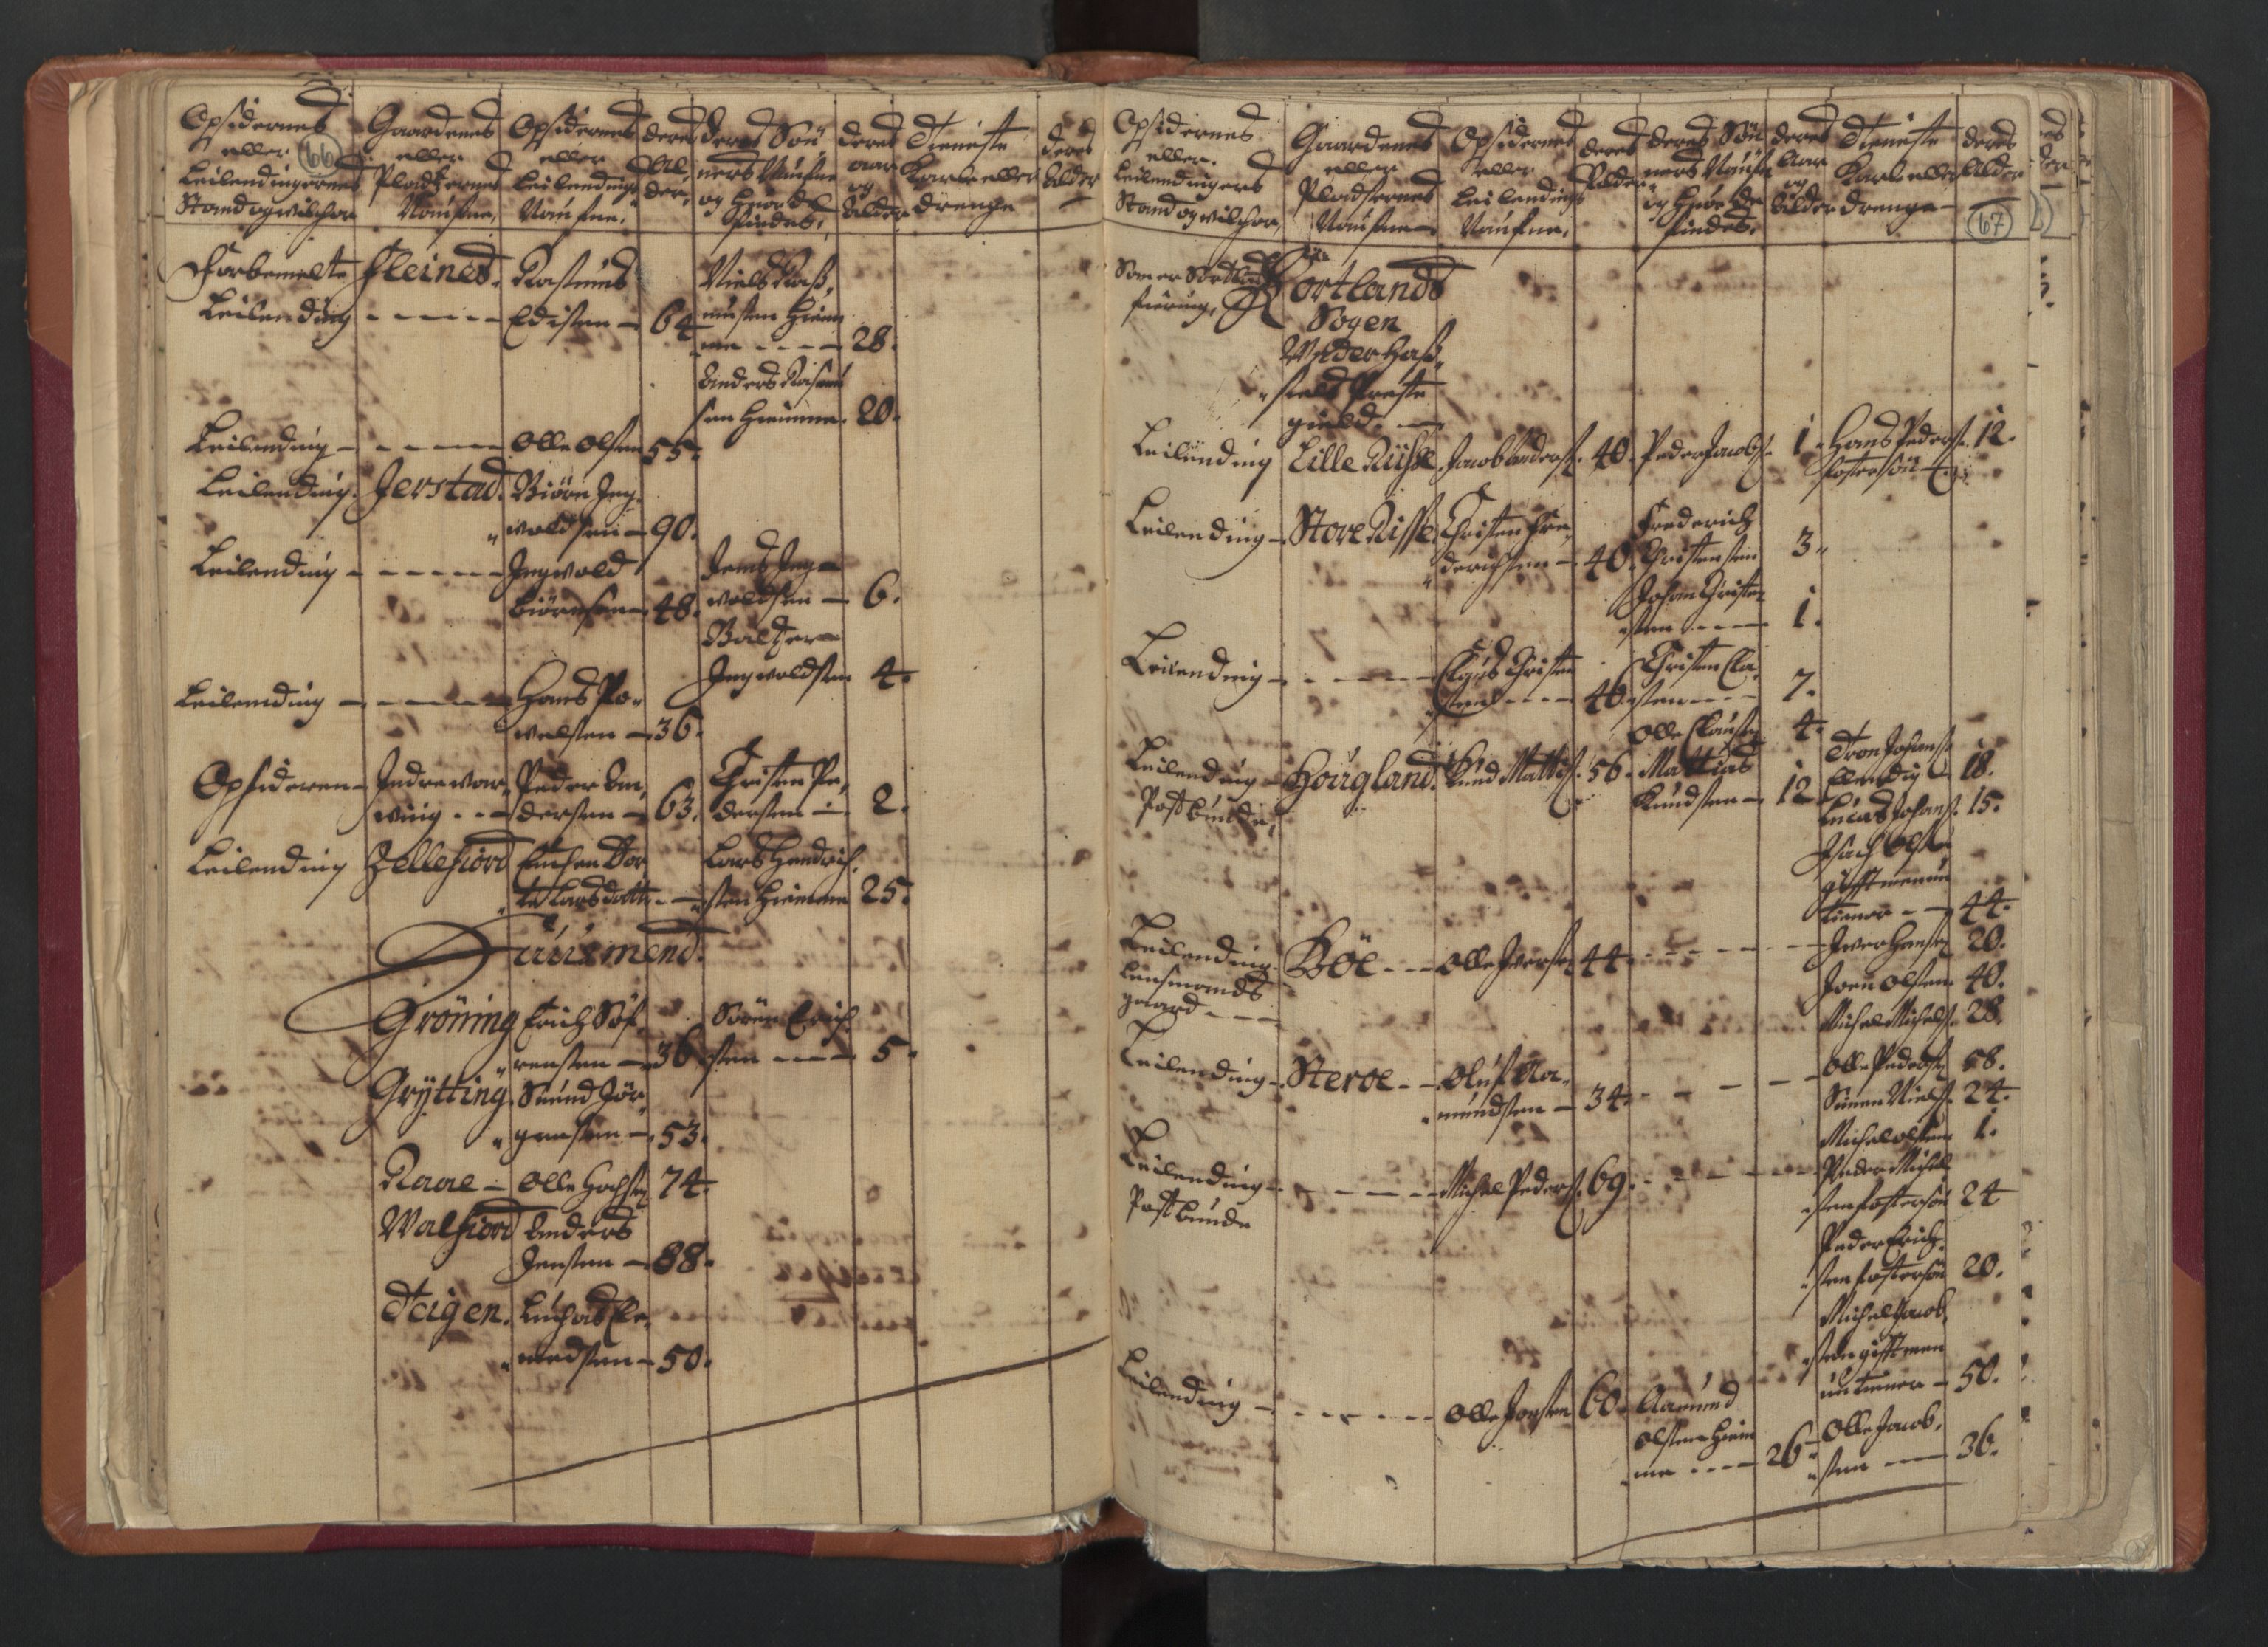 RA, Census (manntall) 1701, no. 18: Vesterålen, Andenes and Lofoten fogderi, 1701, p. 66-67